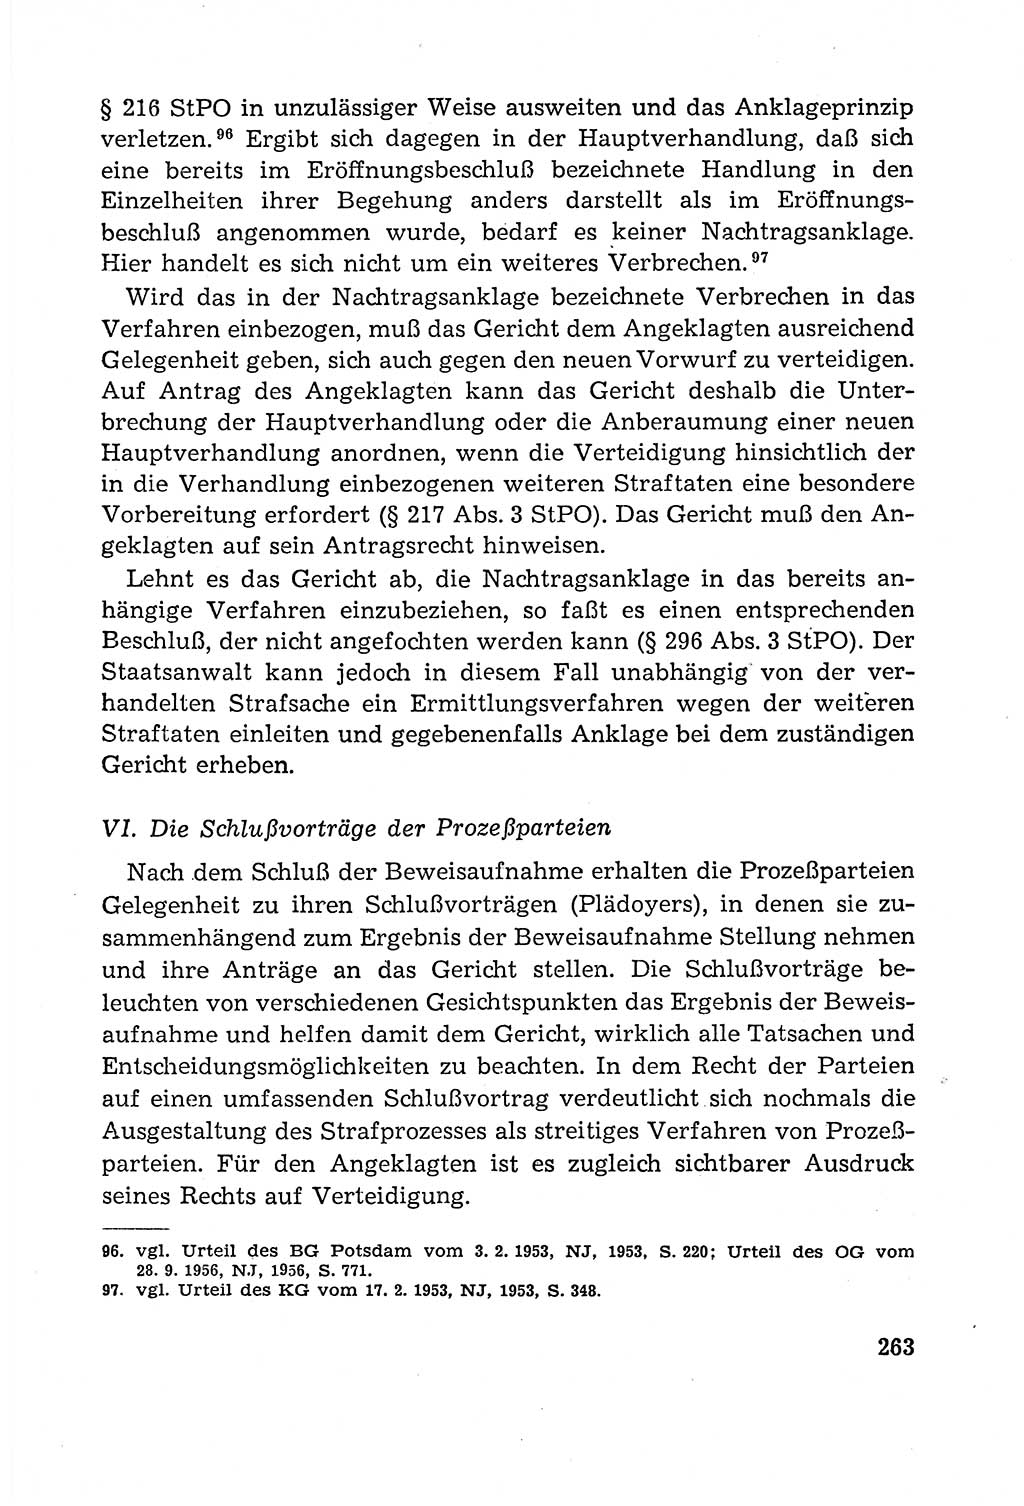 Leitfaden des Strafprozeßrechts der Deutschen Demokratischen Republik (DDR) 1959, Seite 263 (LF StPR DDR 1959, S. 263)